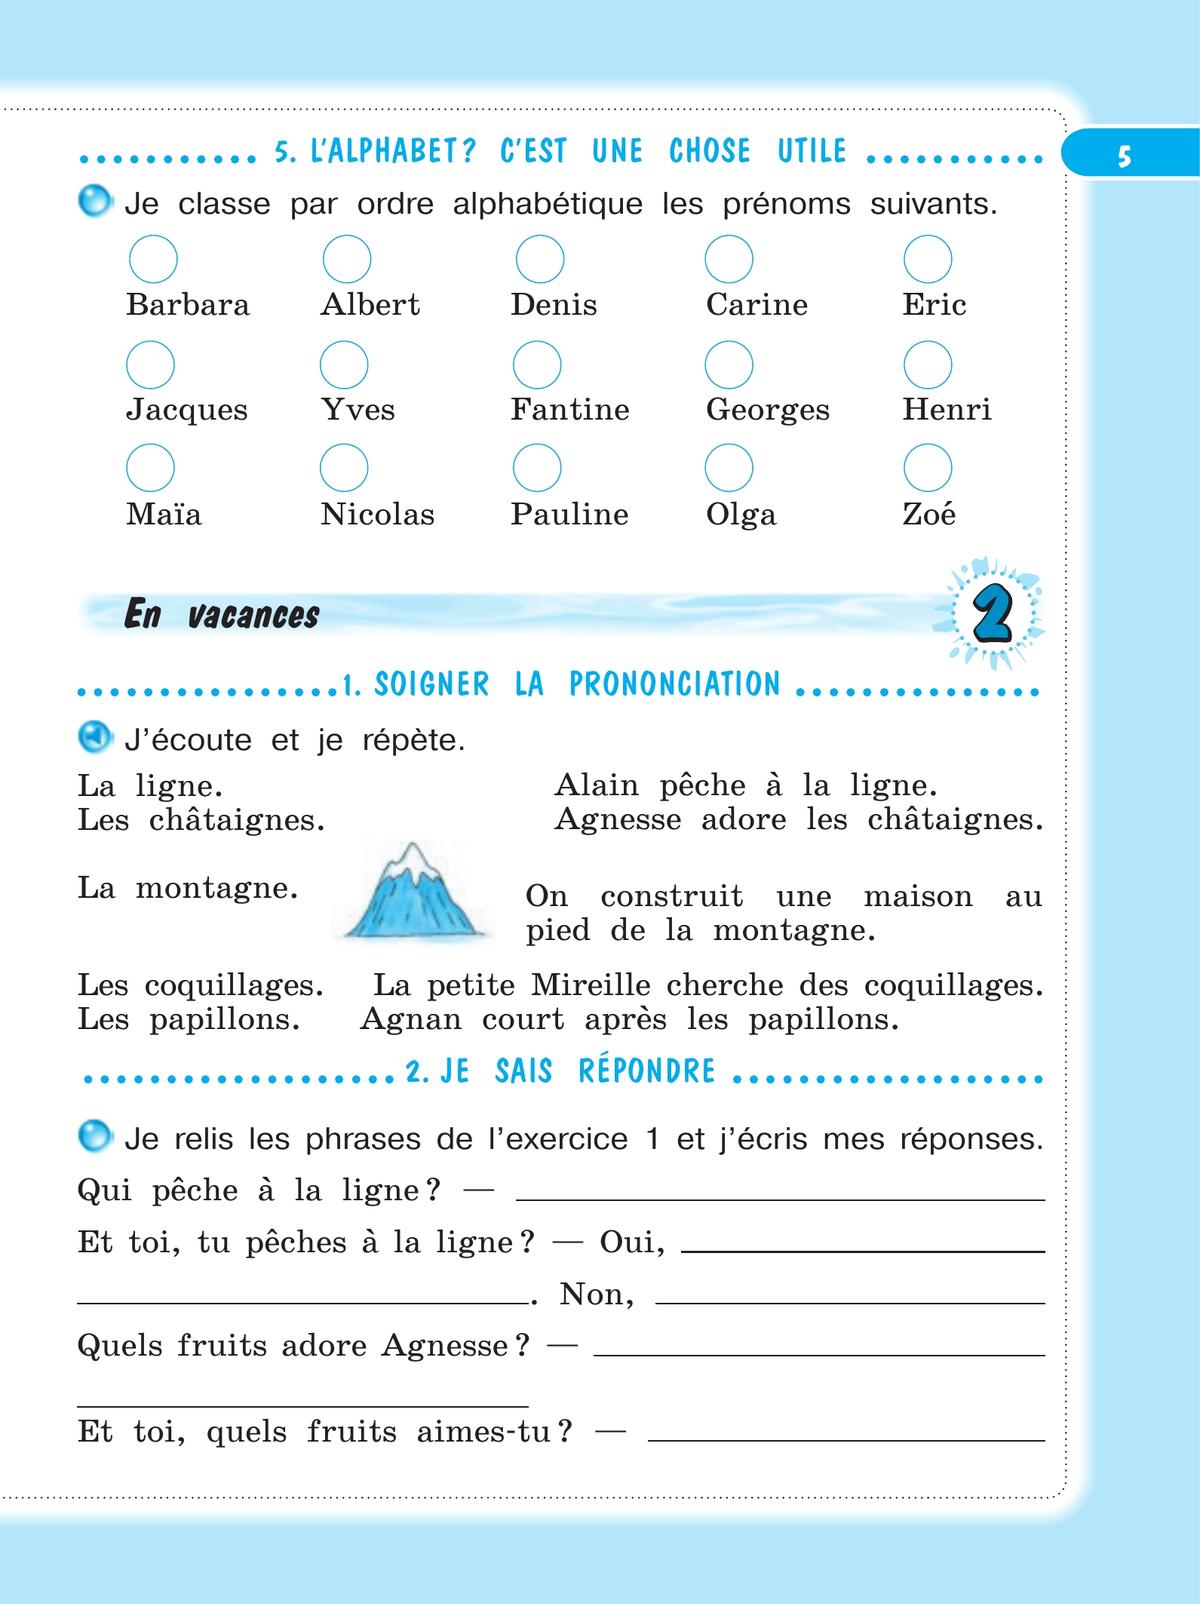 Французский язык. Рабочая тетрадь. 4 класс 5